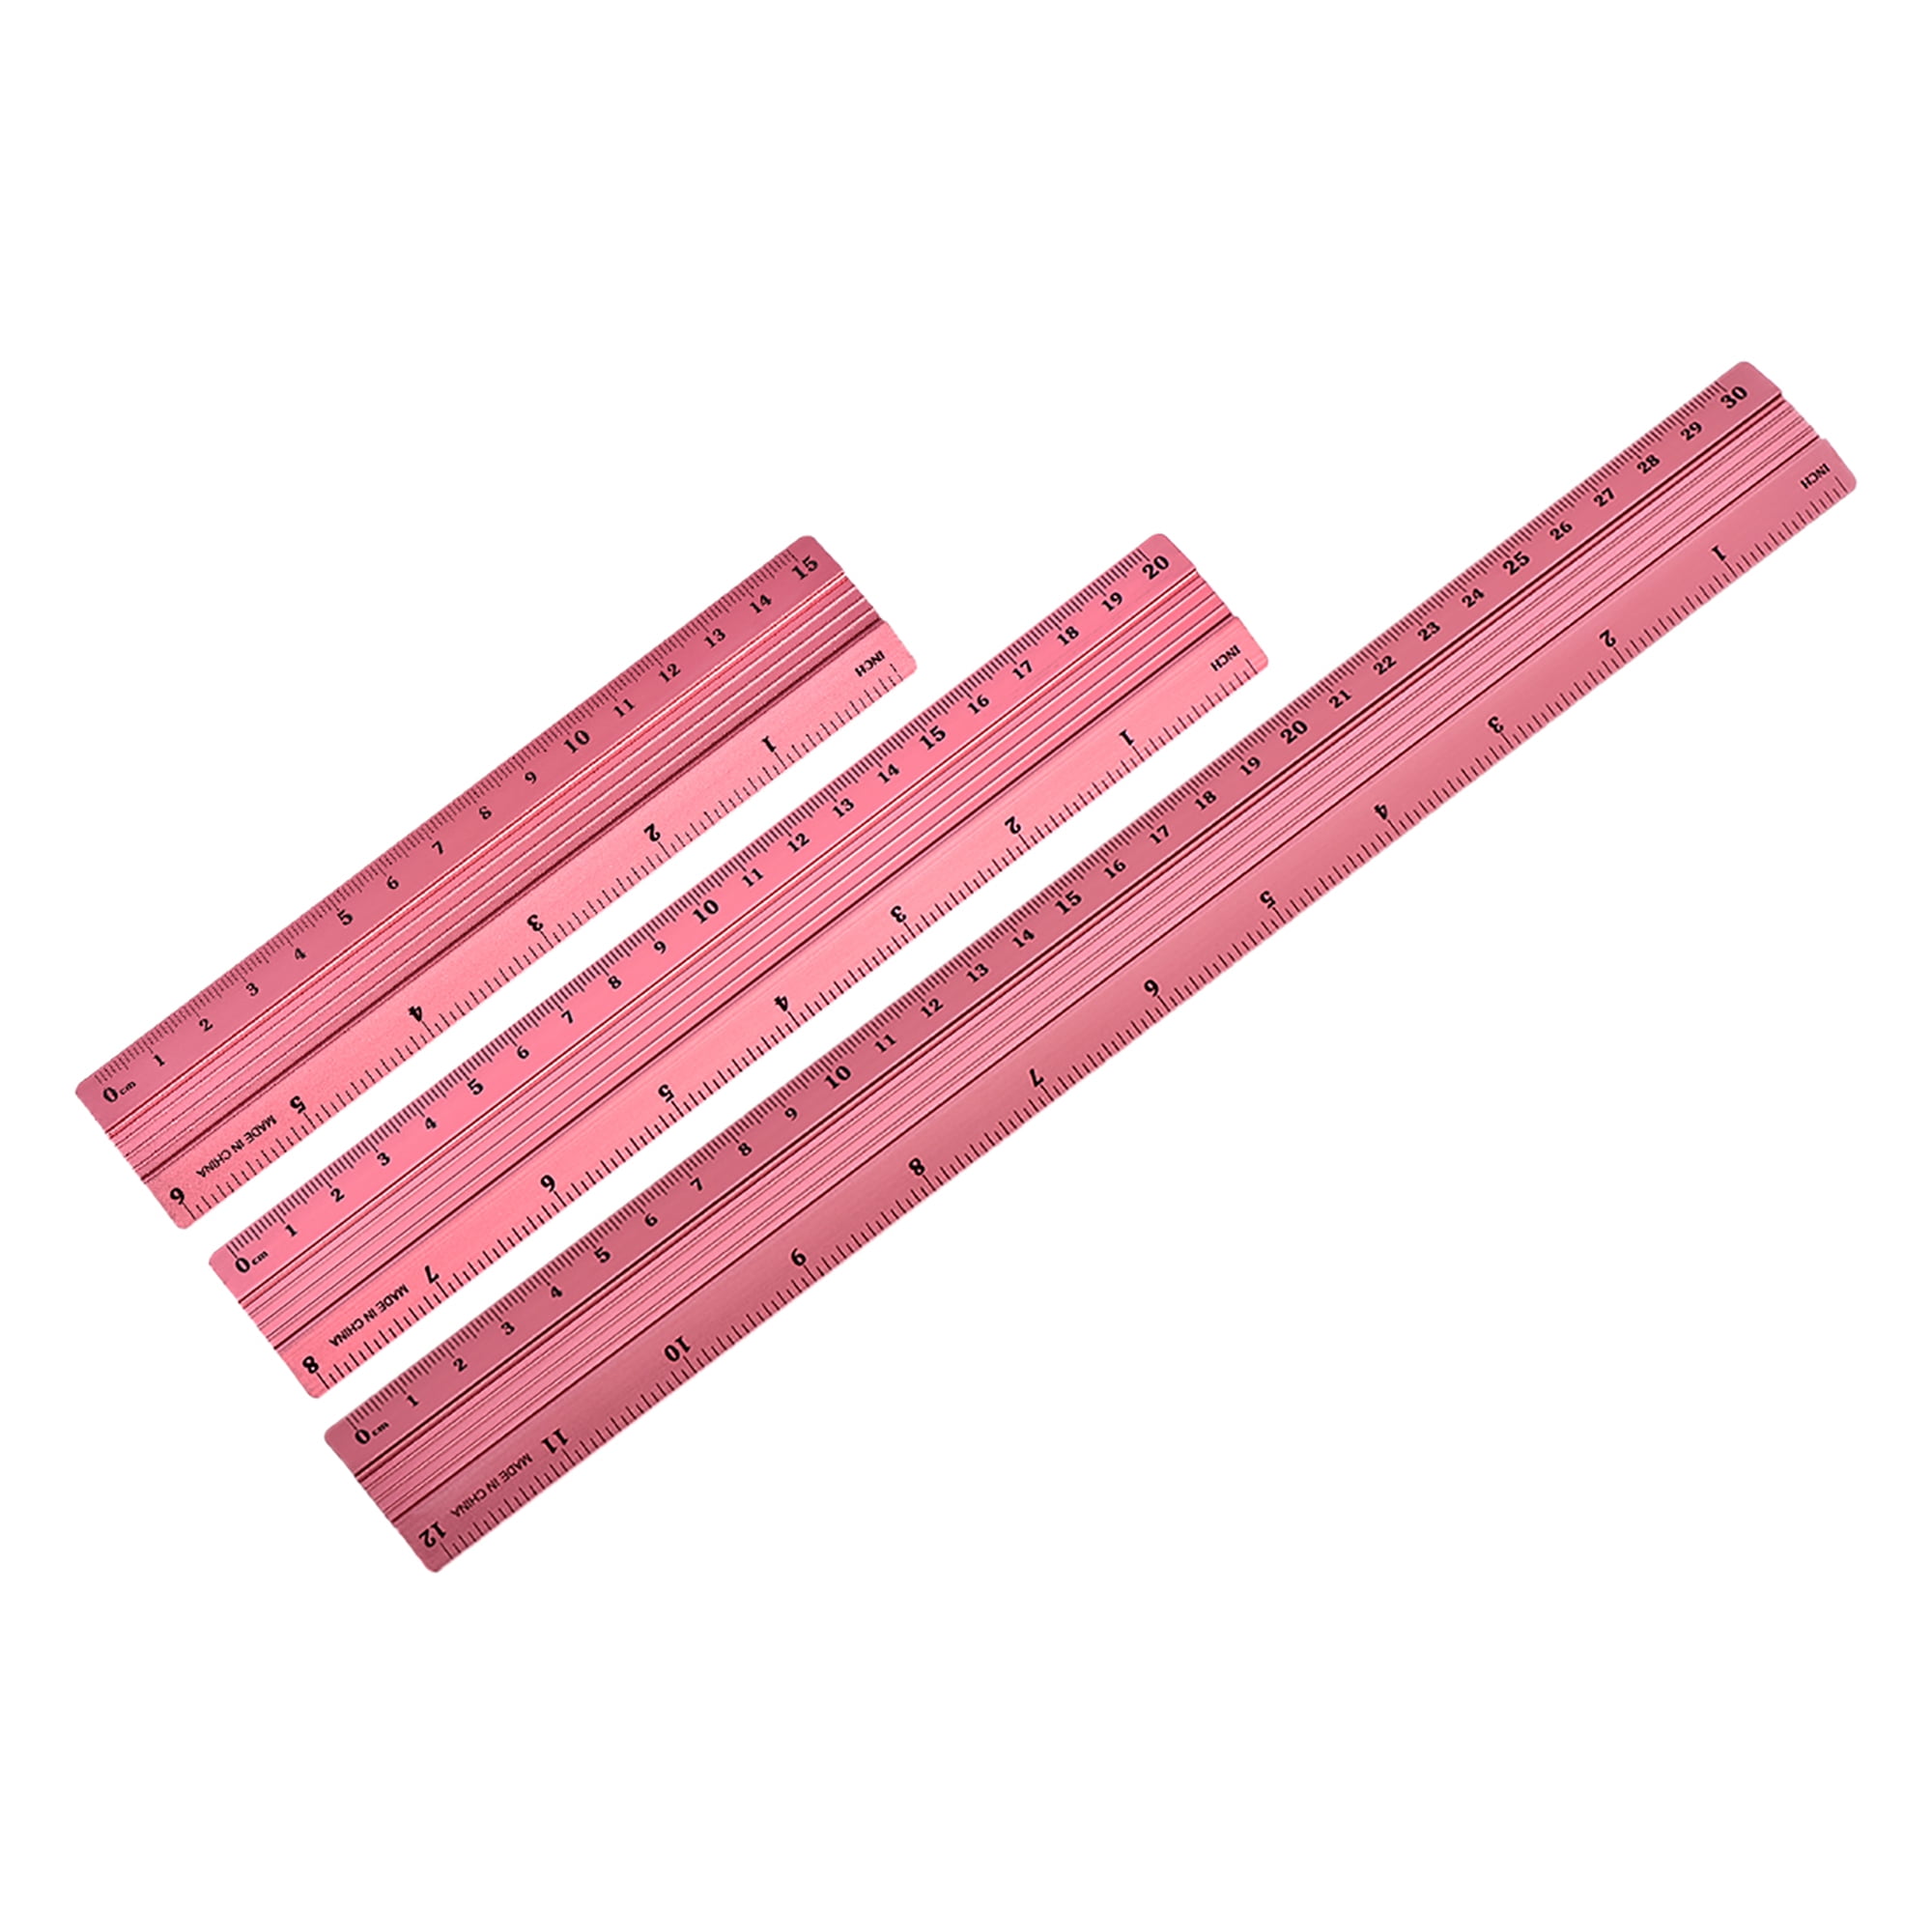 measurement ruler